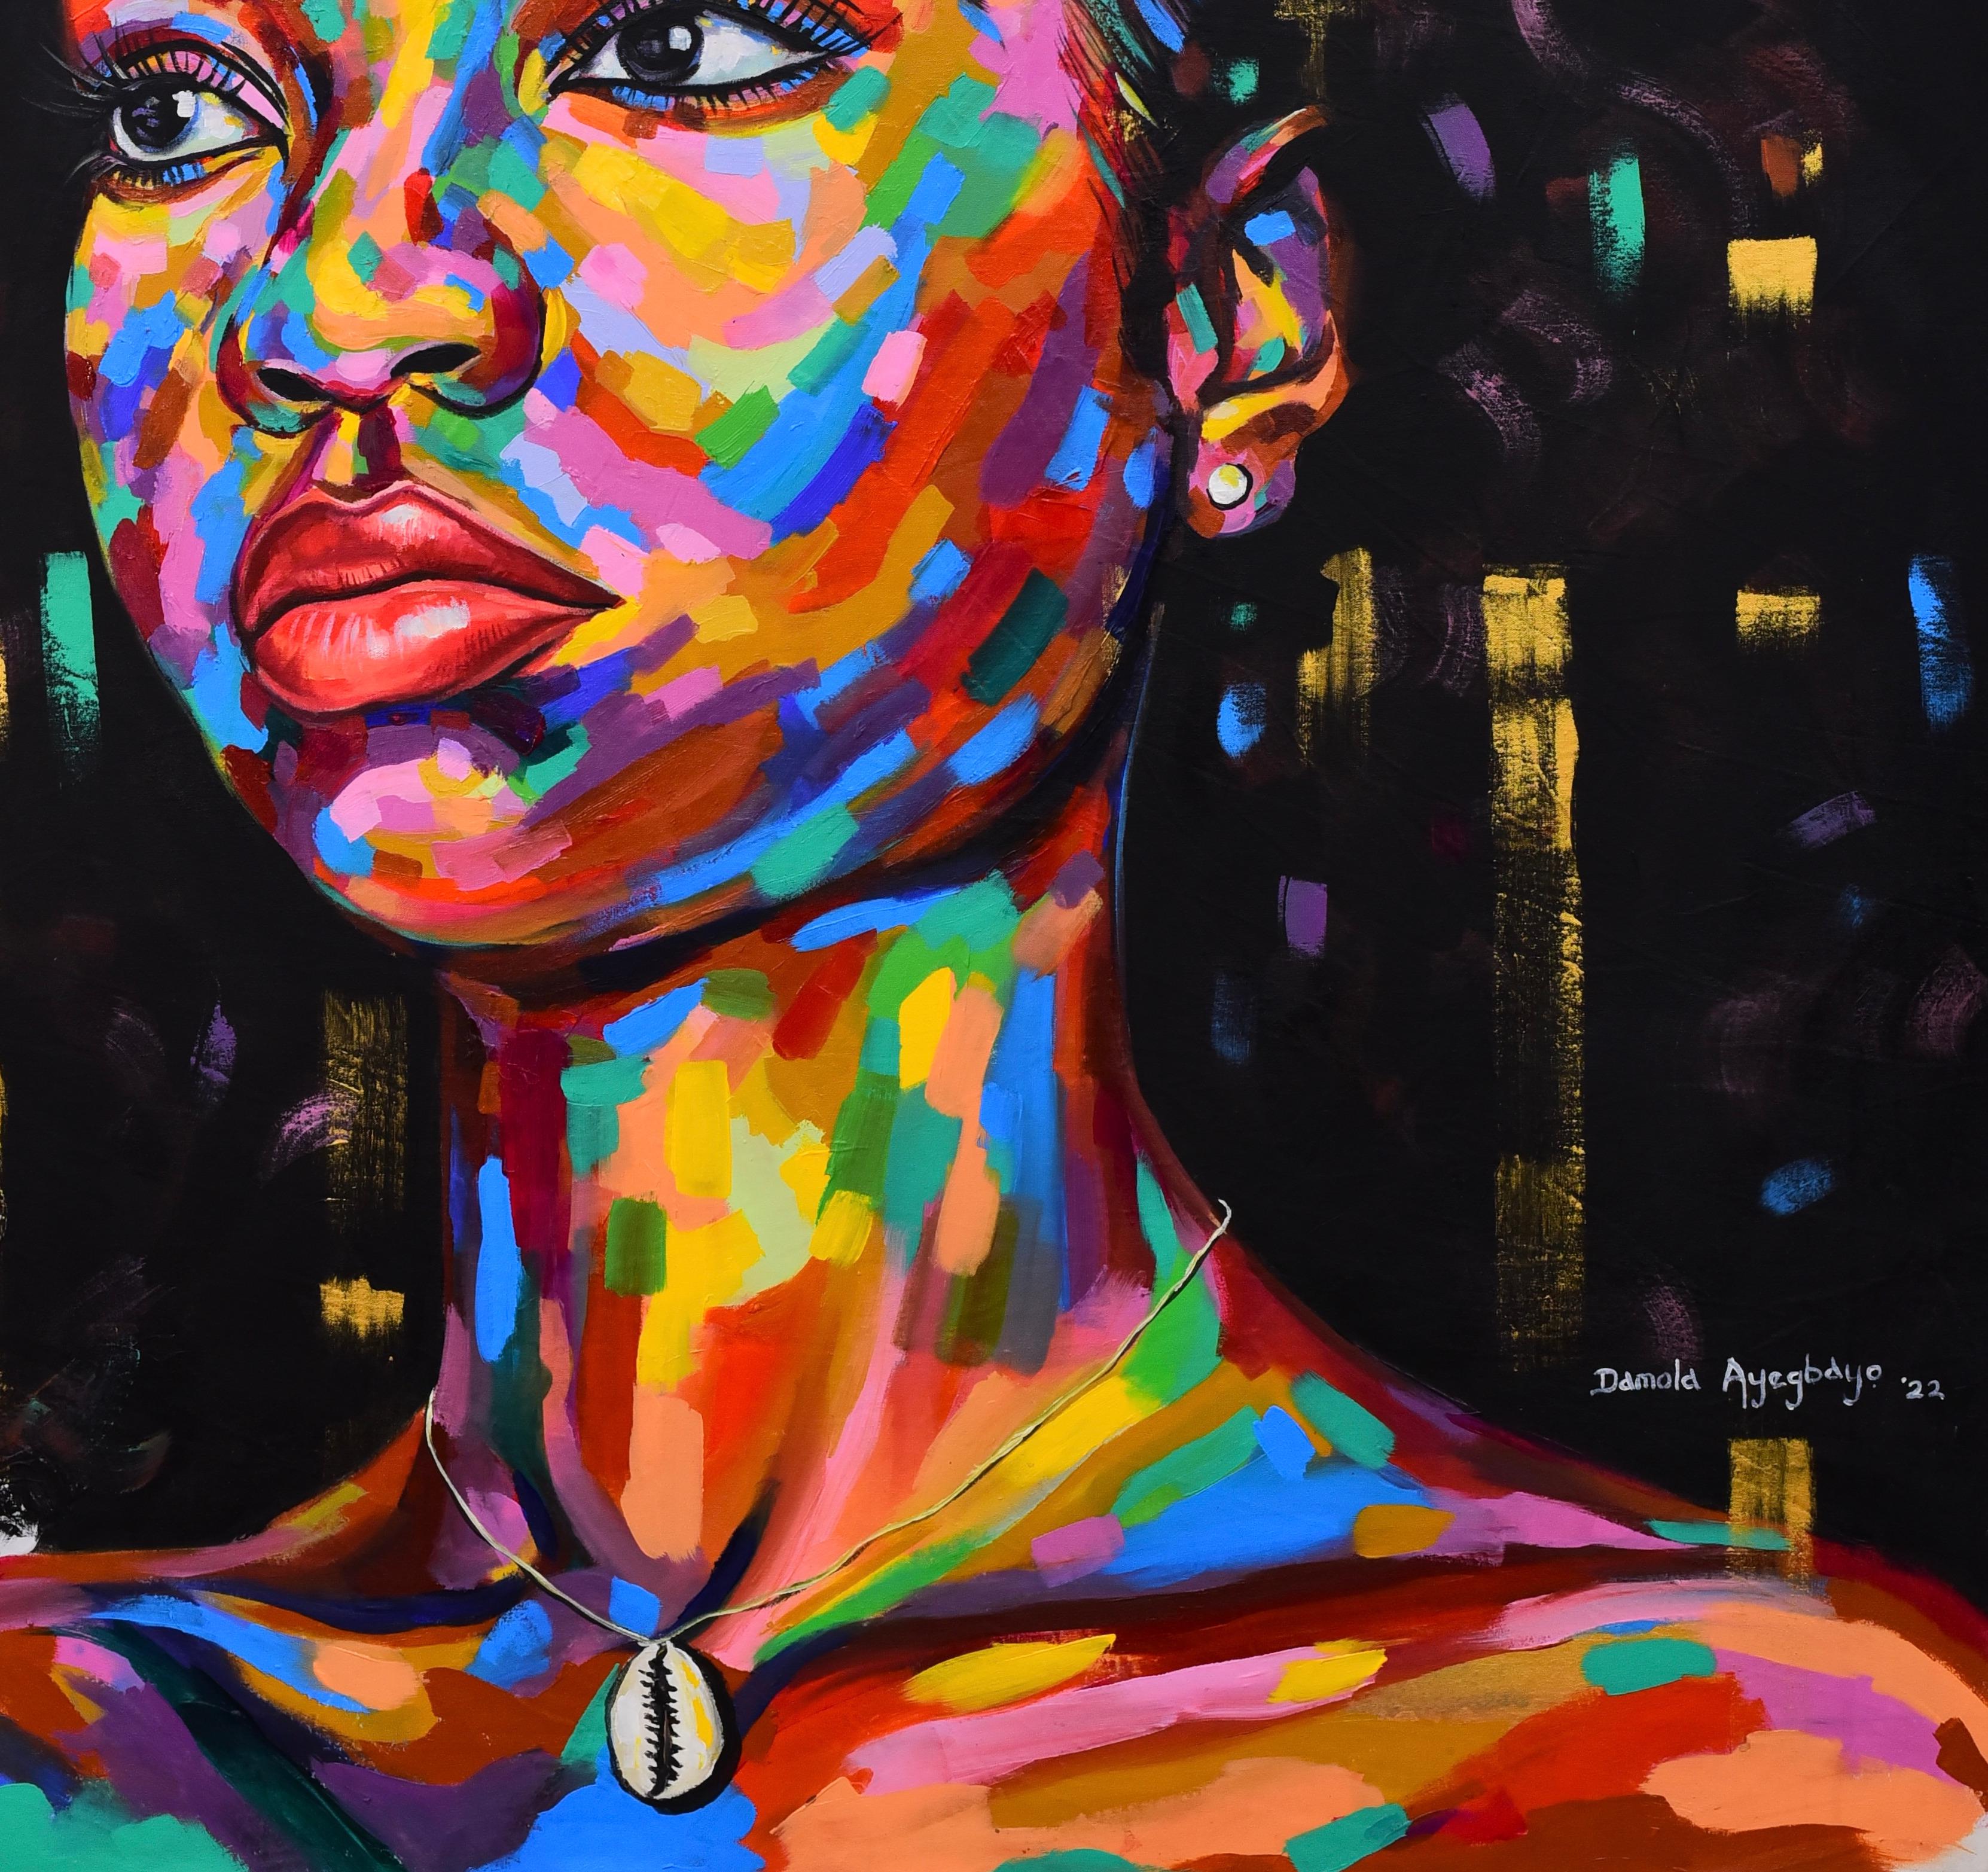 Vision Of Hope 3 - Painting by Damola Ayegbayo 